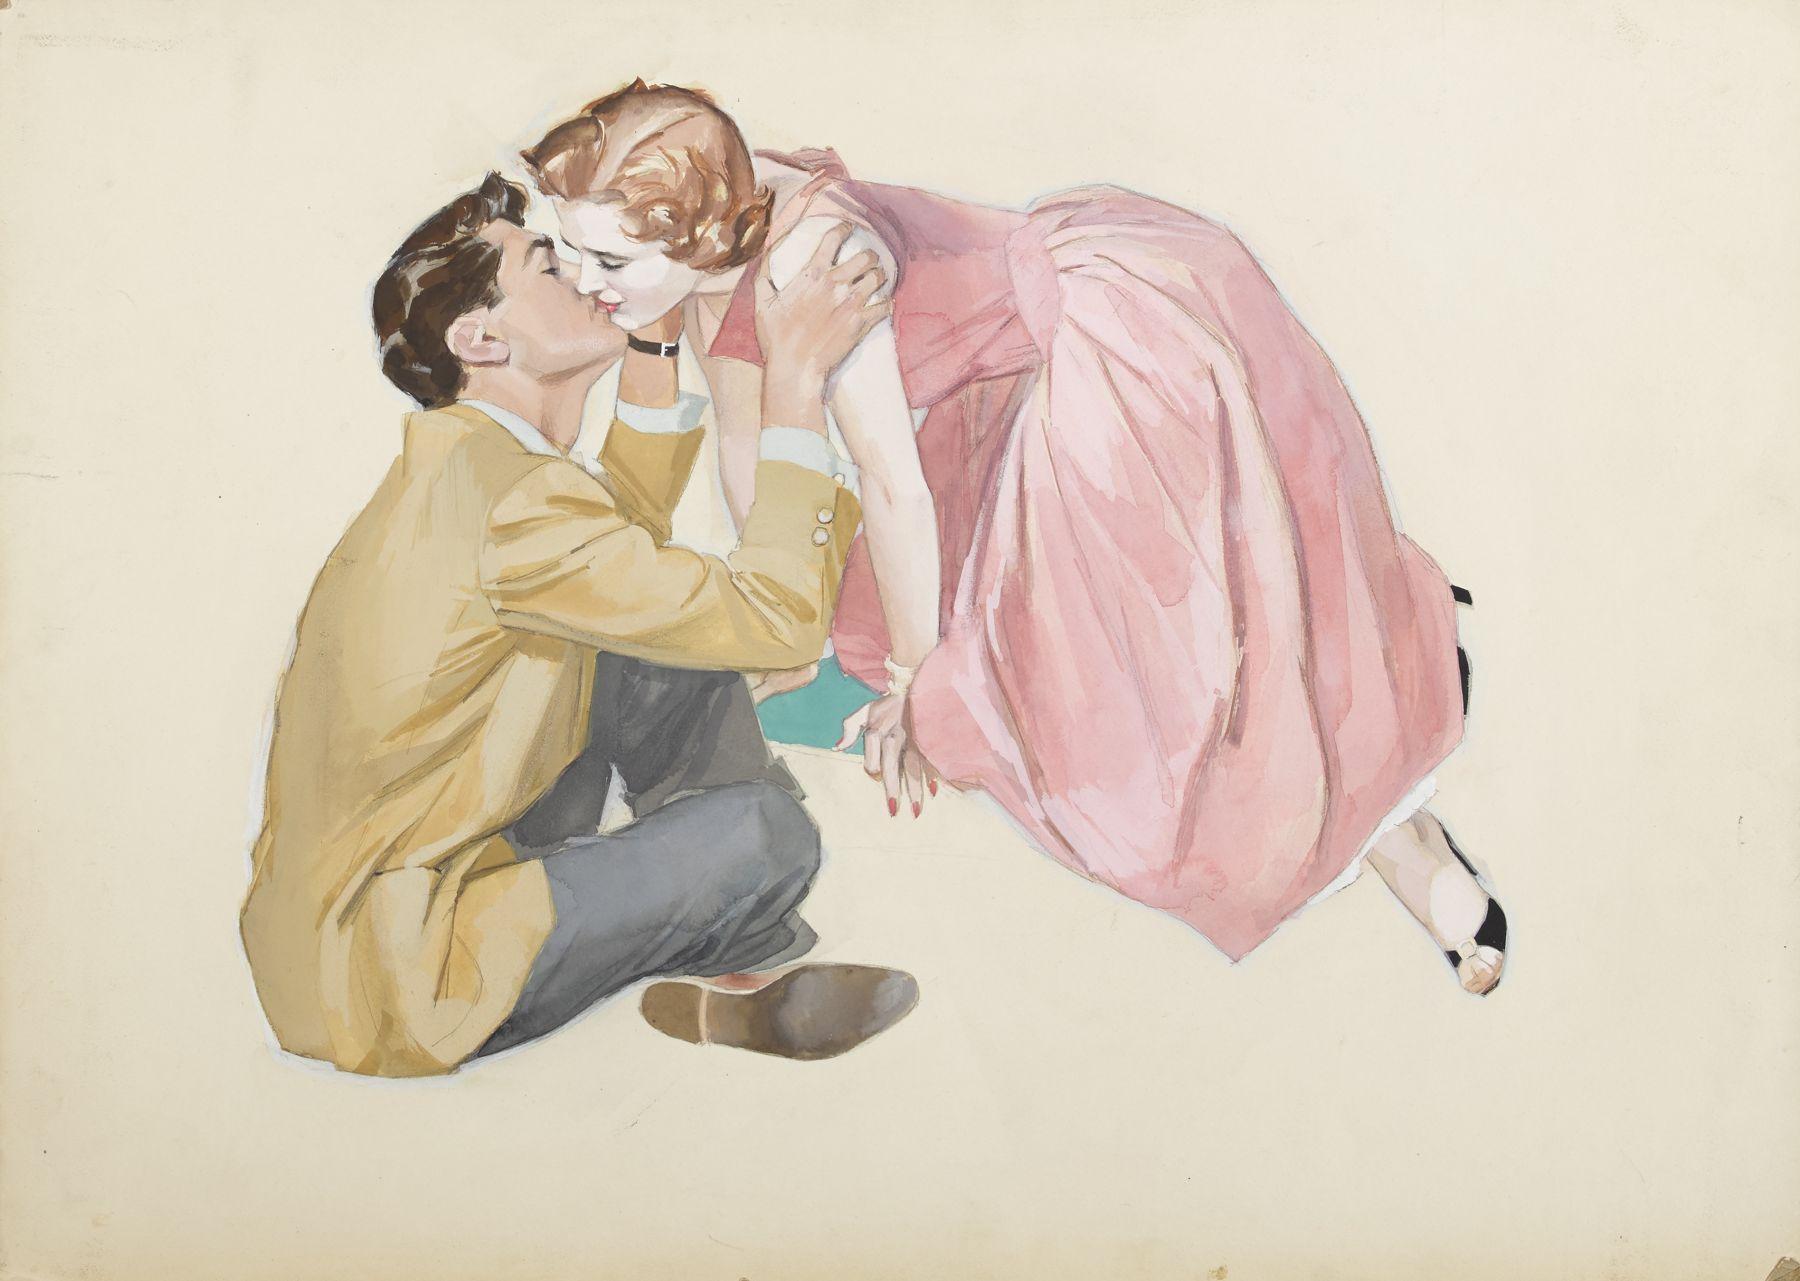 John Lagatta Figurative Art – Eine Frau in einem rosafarbenen Kleid, die sich zu einem sitzenden Mann hinlehnt und küsst